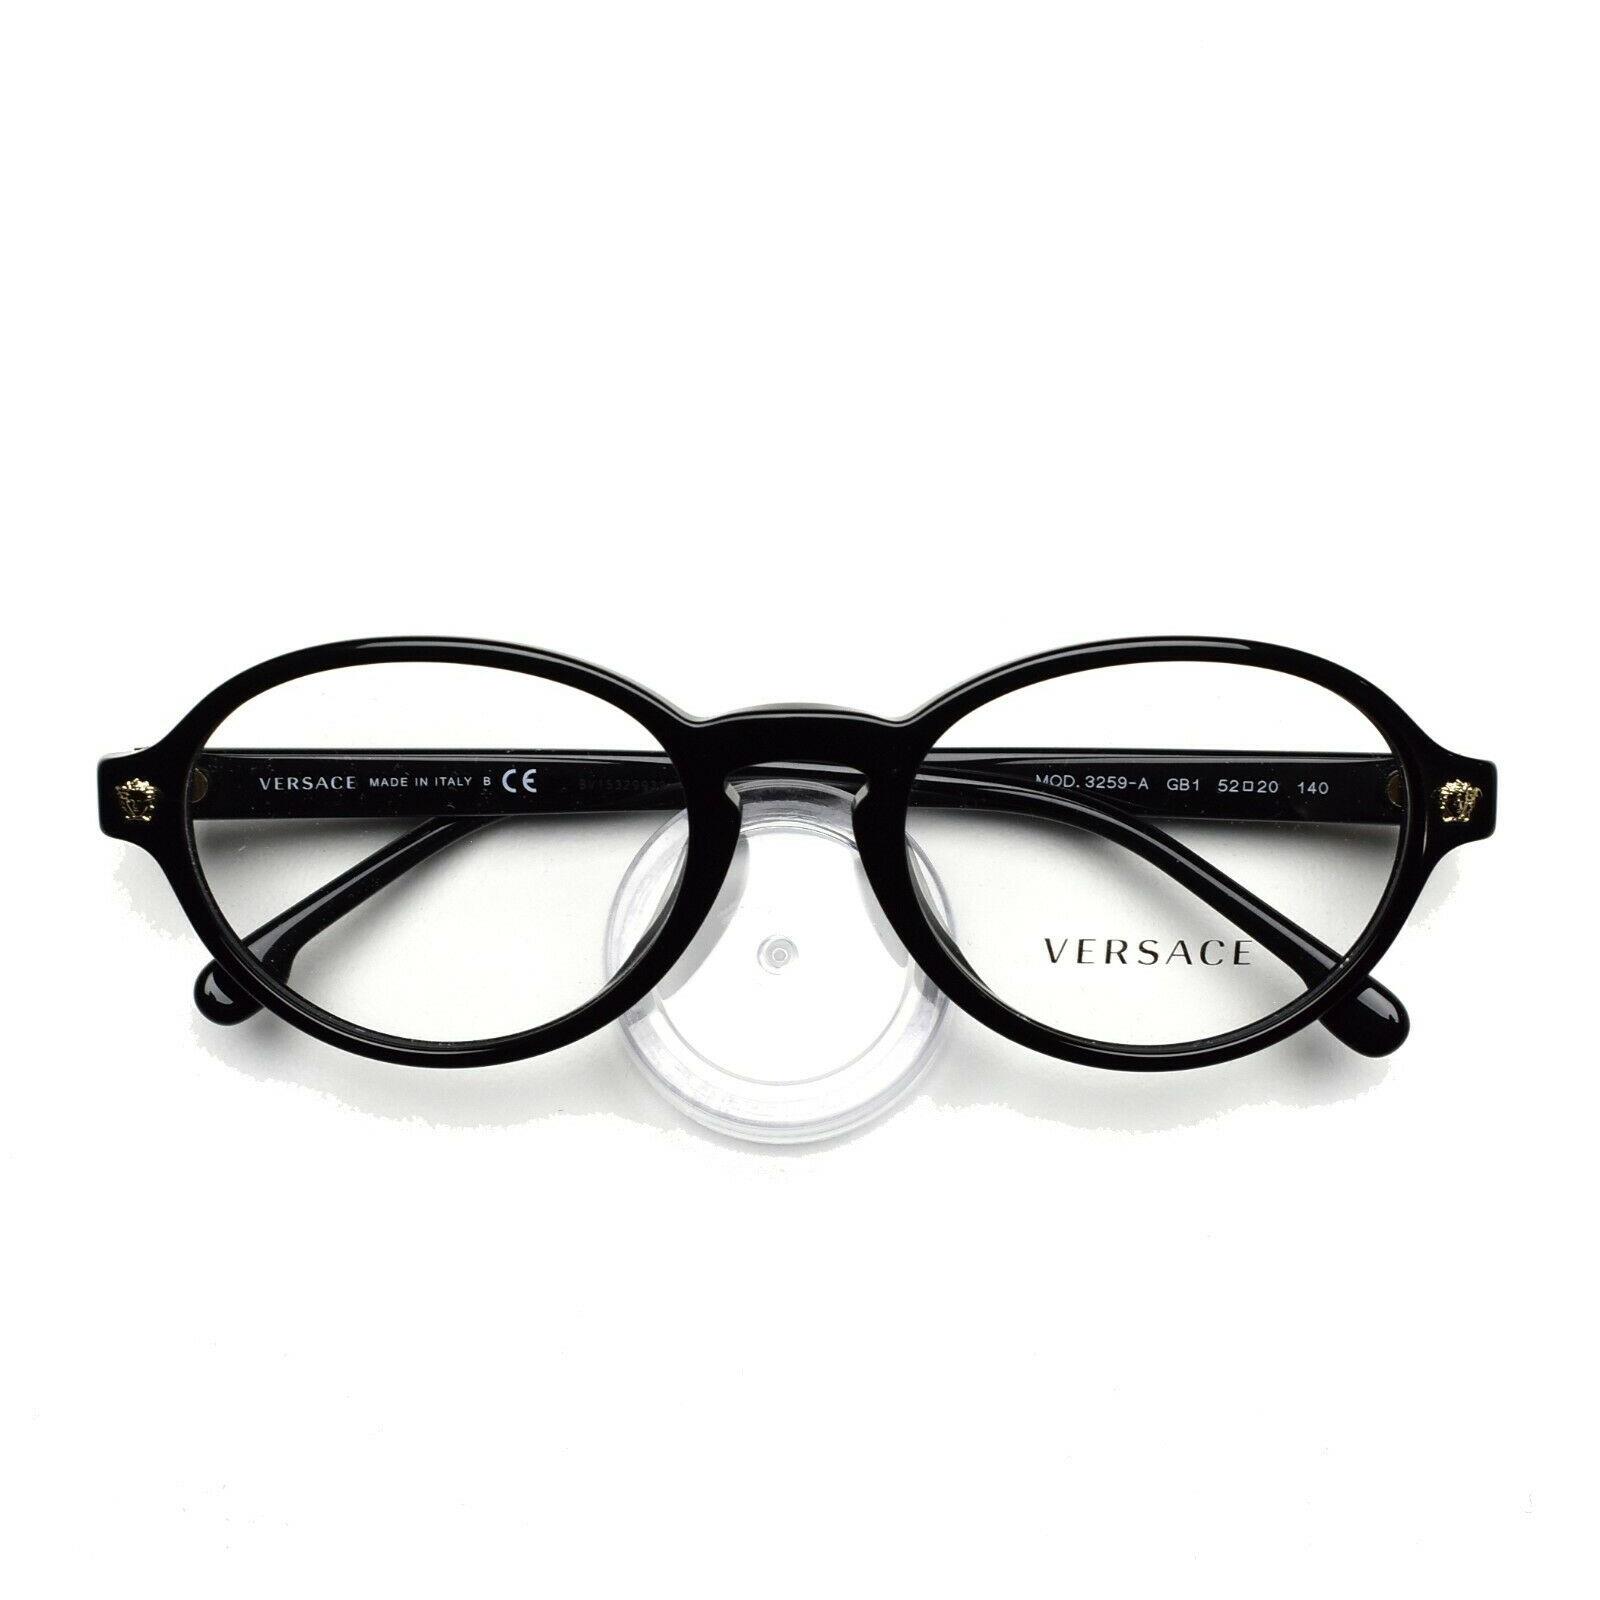 Versace Eyeglasses Frame 3259A GB1 Black 52-20-140 Without Case - Black Frame